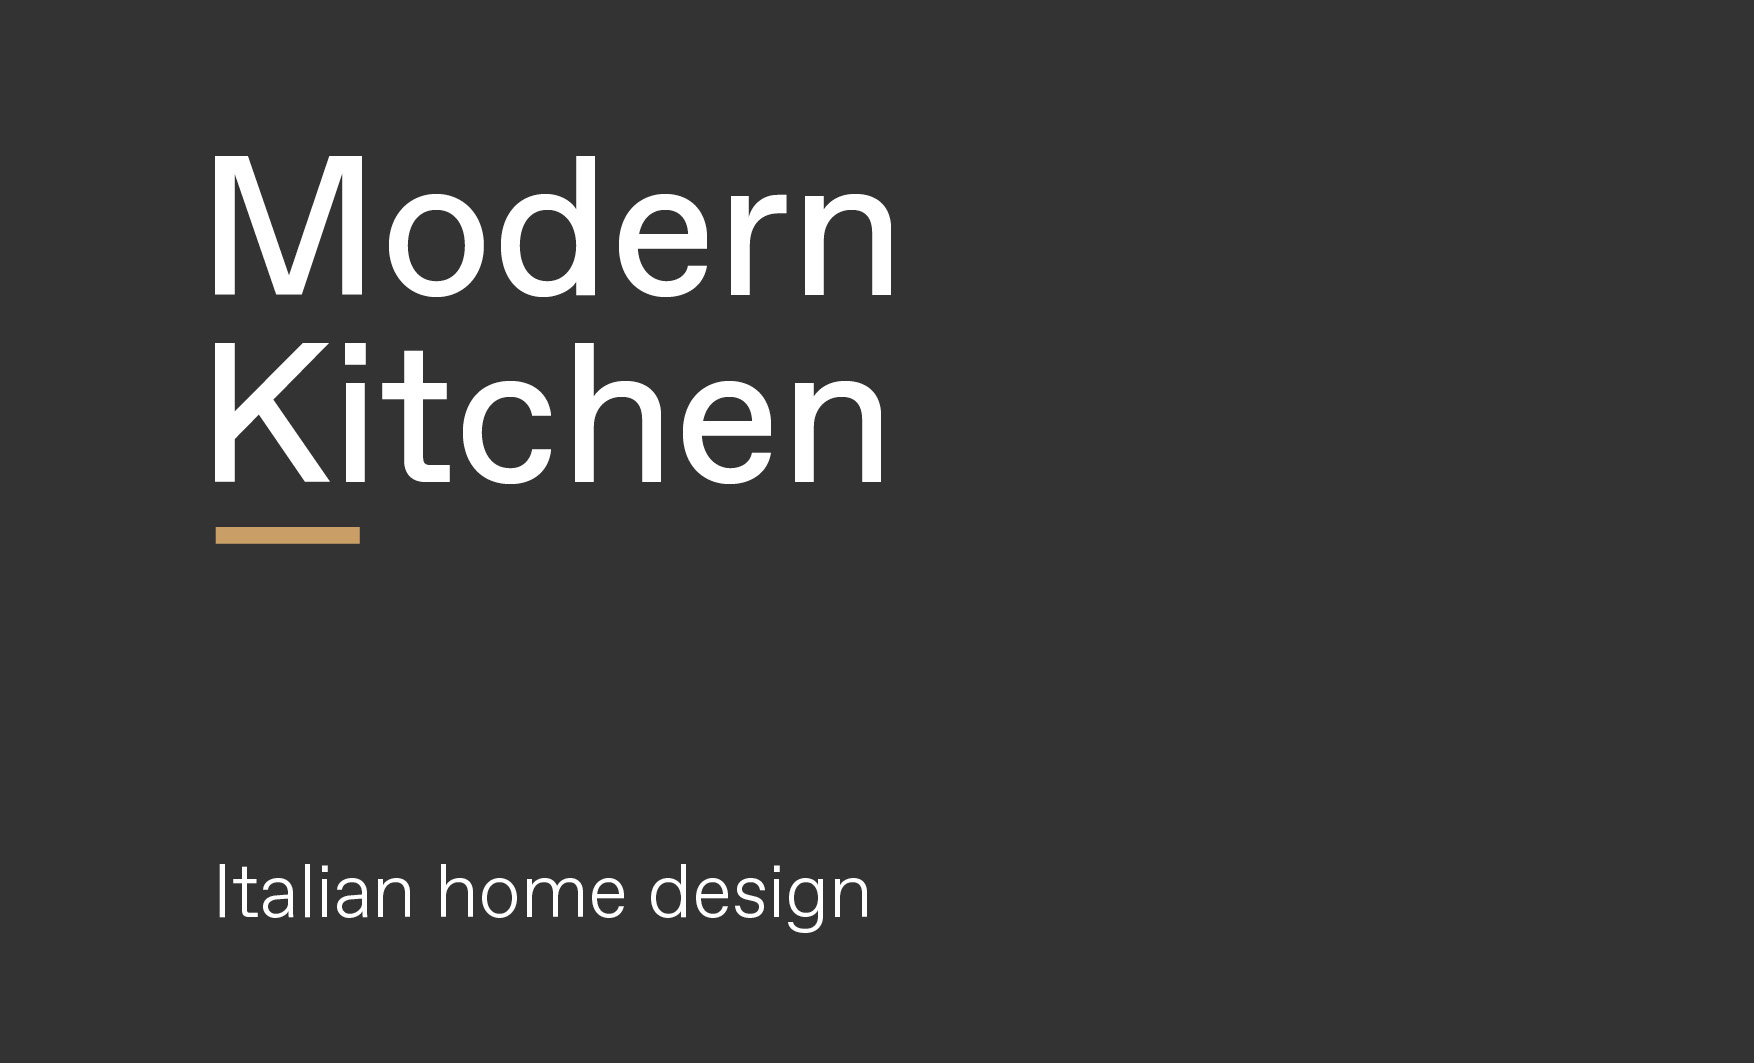 Concept of modern Italian kitchen design made by Esperiri team